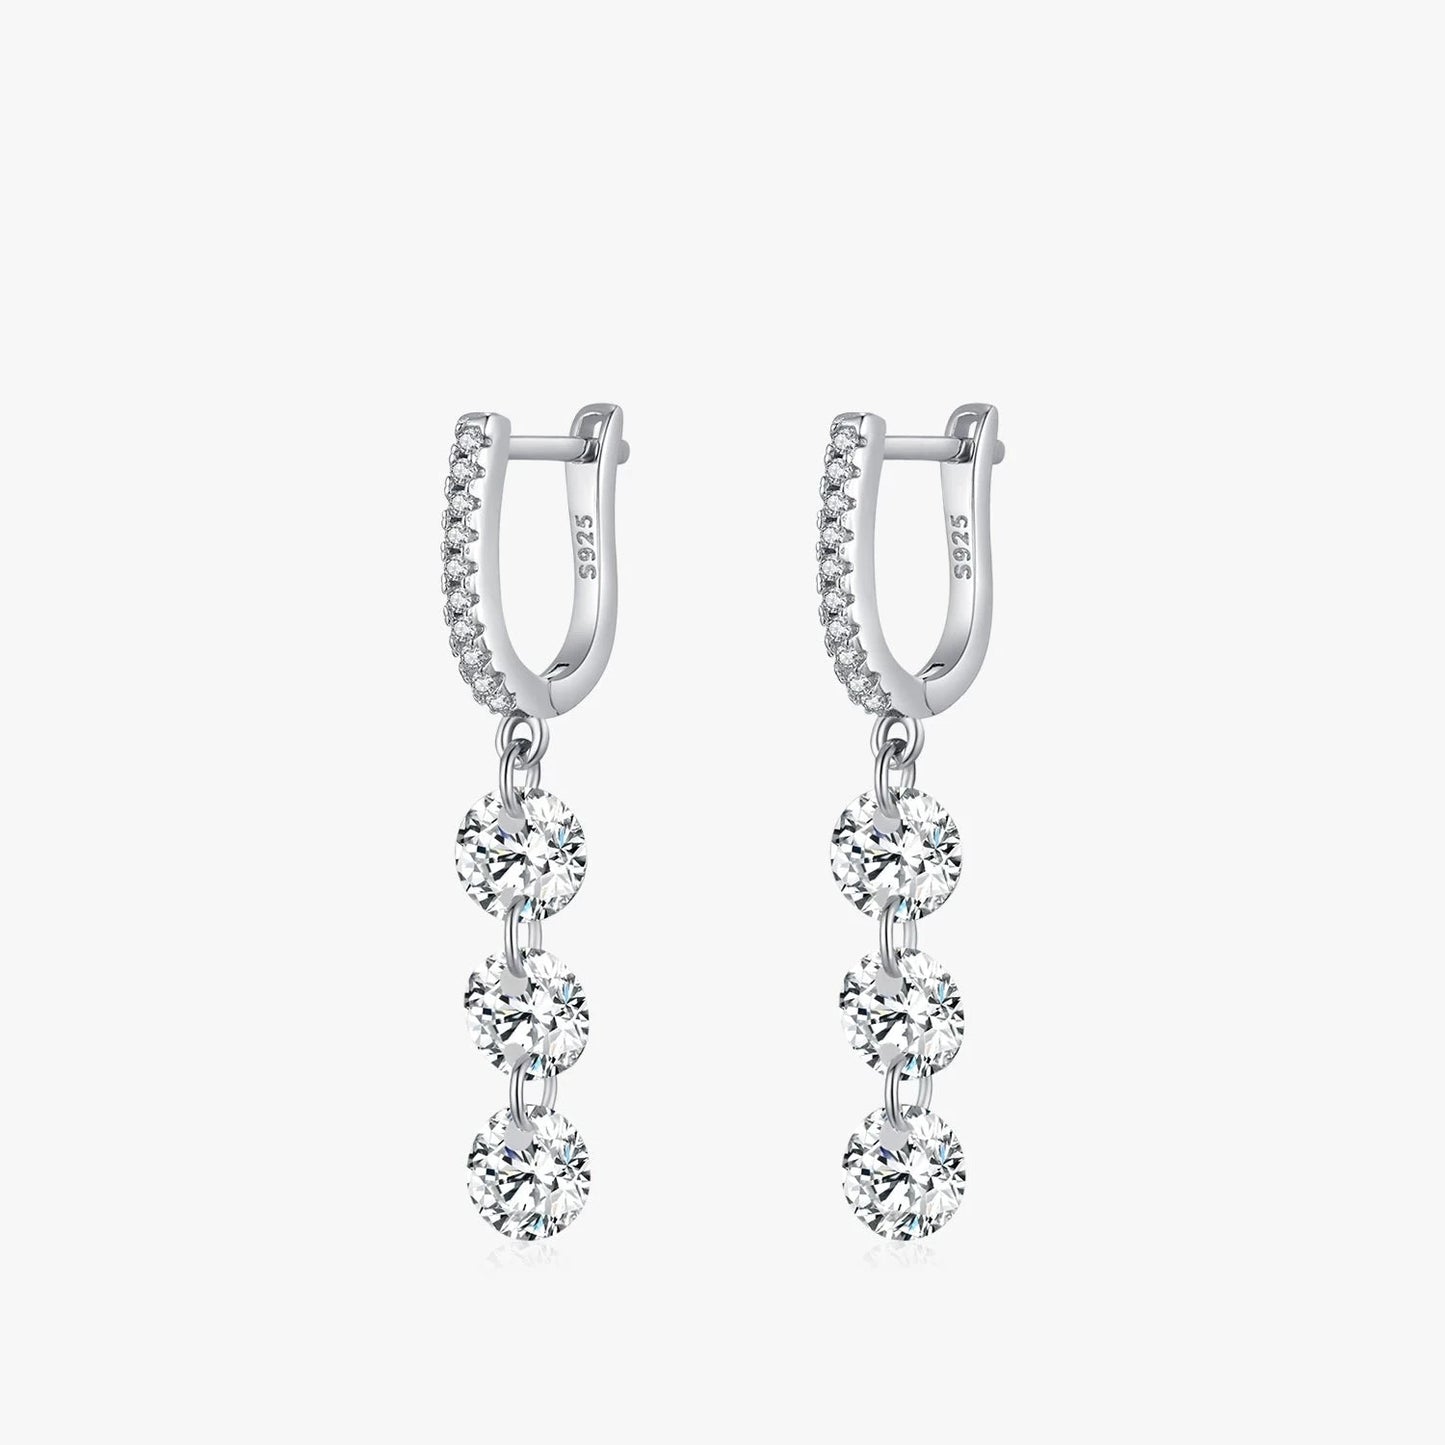 Sparkling Luxury Dangle Earrings